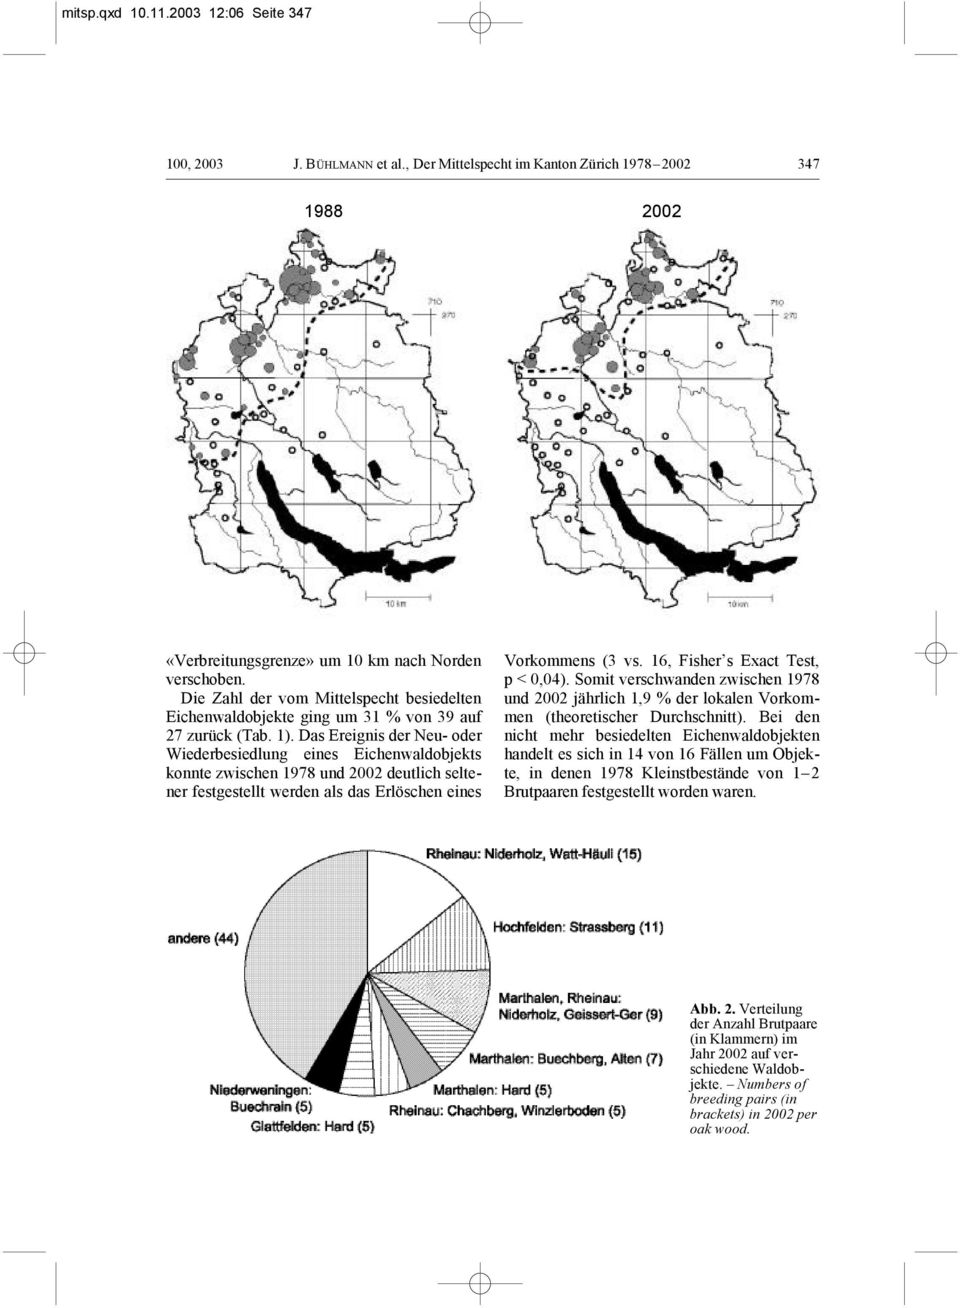 Das Ereignis der Neu- oder Wiederbesiedlung eines Eichenwaldobjekts konnte zwischen 1978 und 2002 deutlich seltener festgestellt werden als das Erlöschen eines Vorkommens (3 vs.